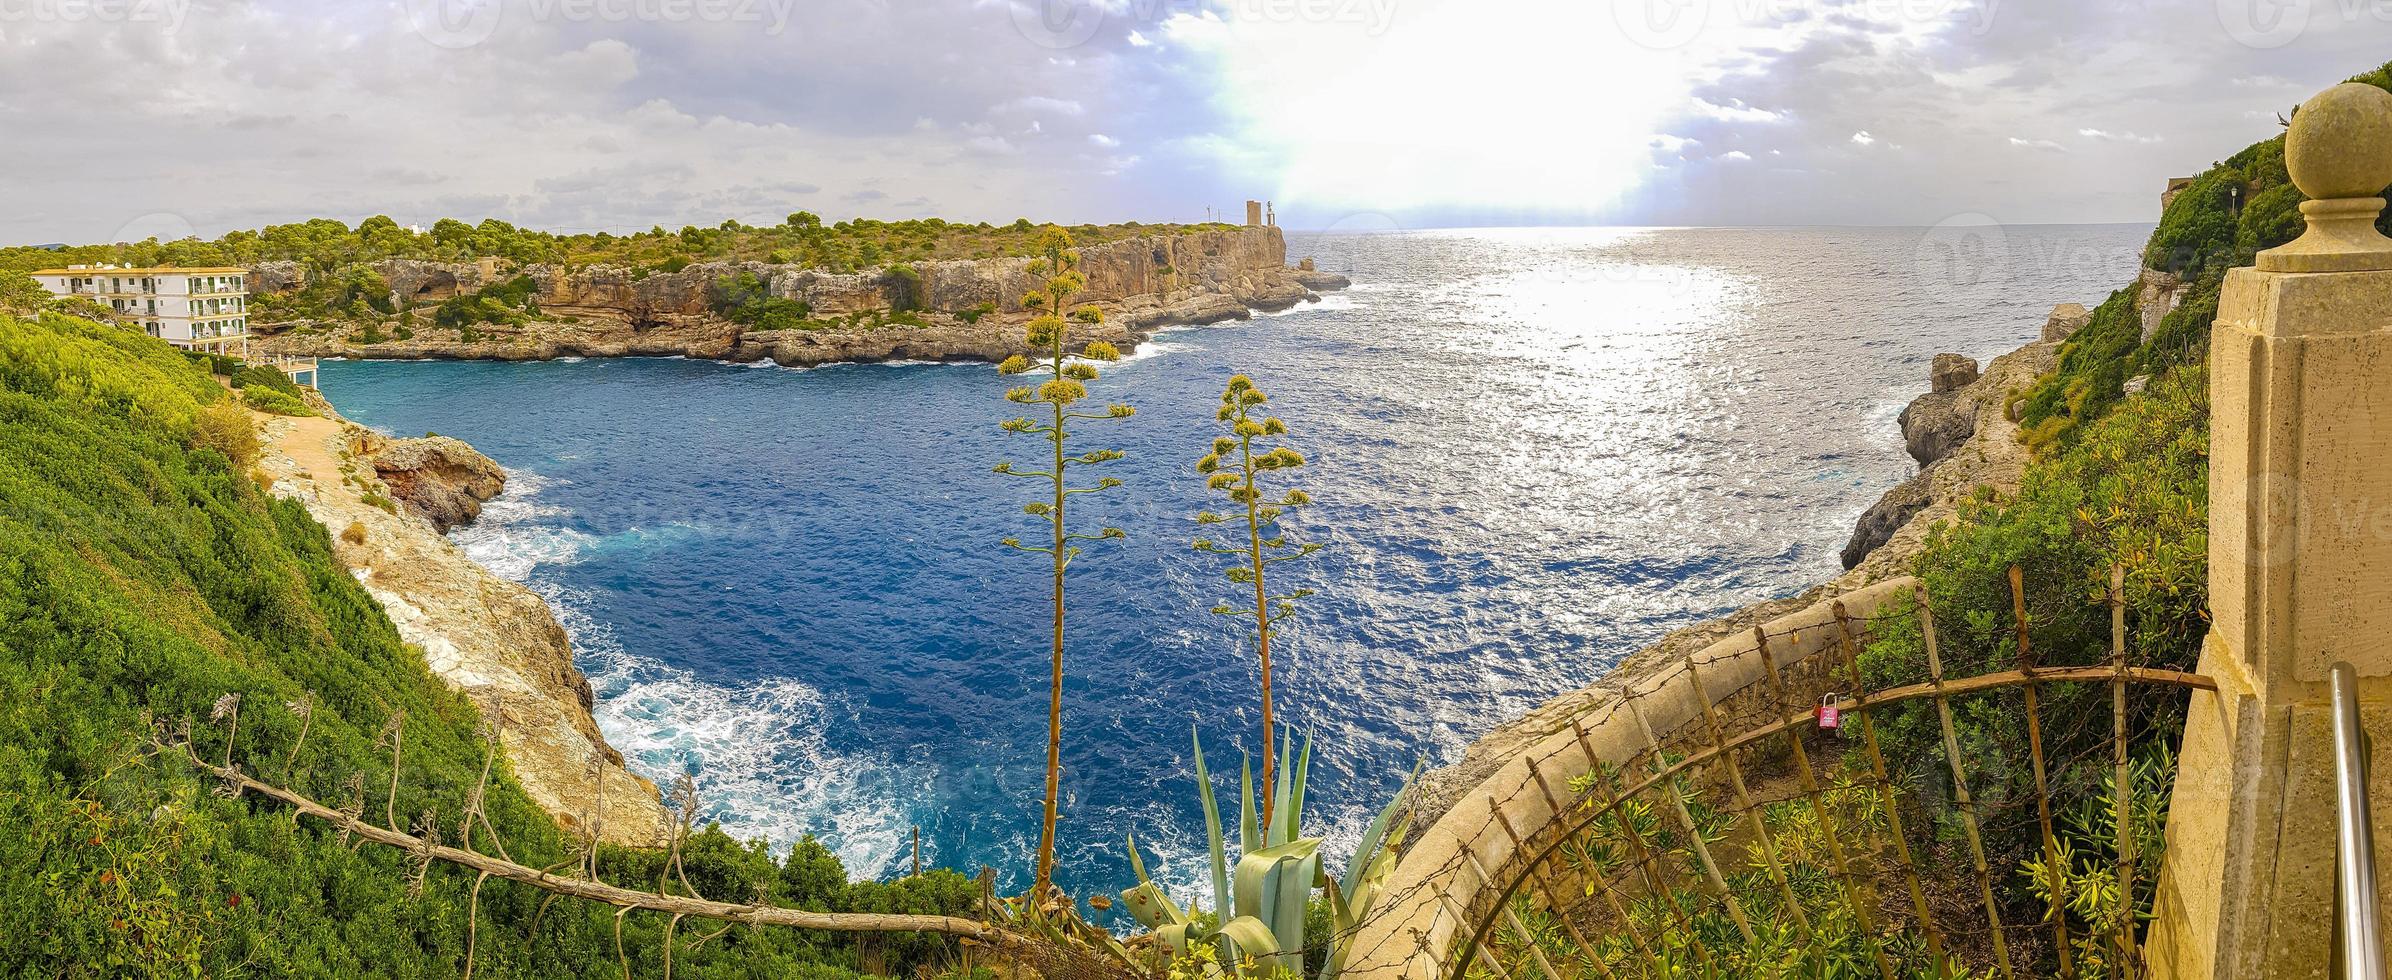 panoramisch uitzicht op de baai en de torre den beu cala figuera. foto